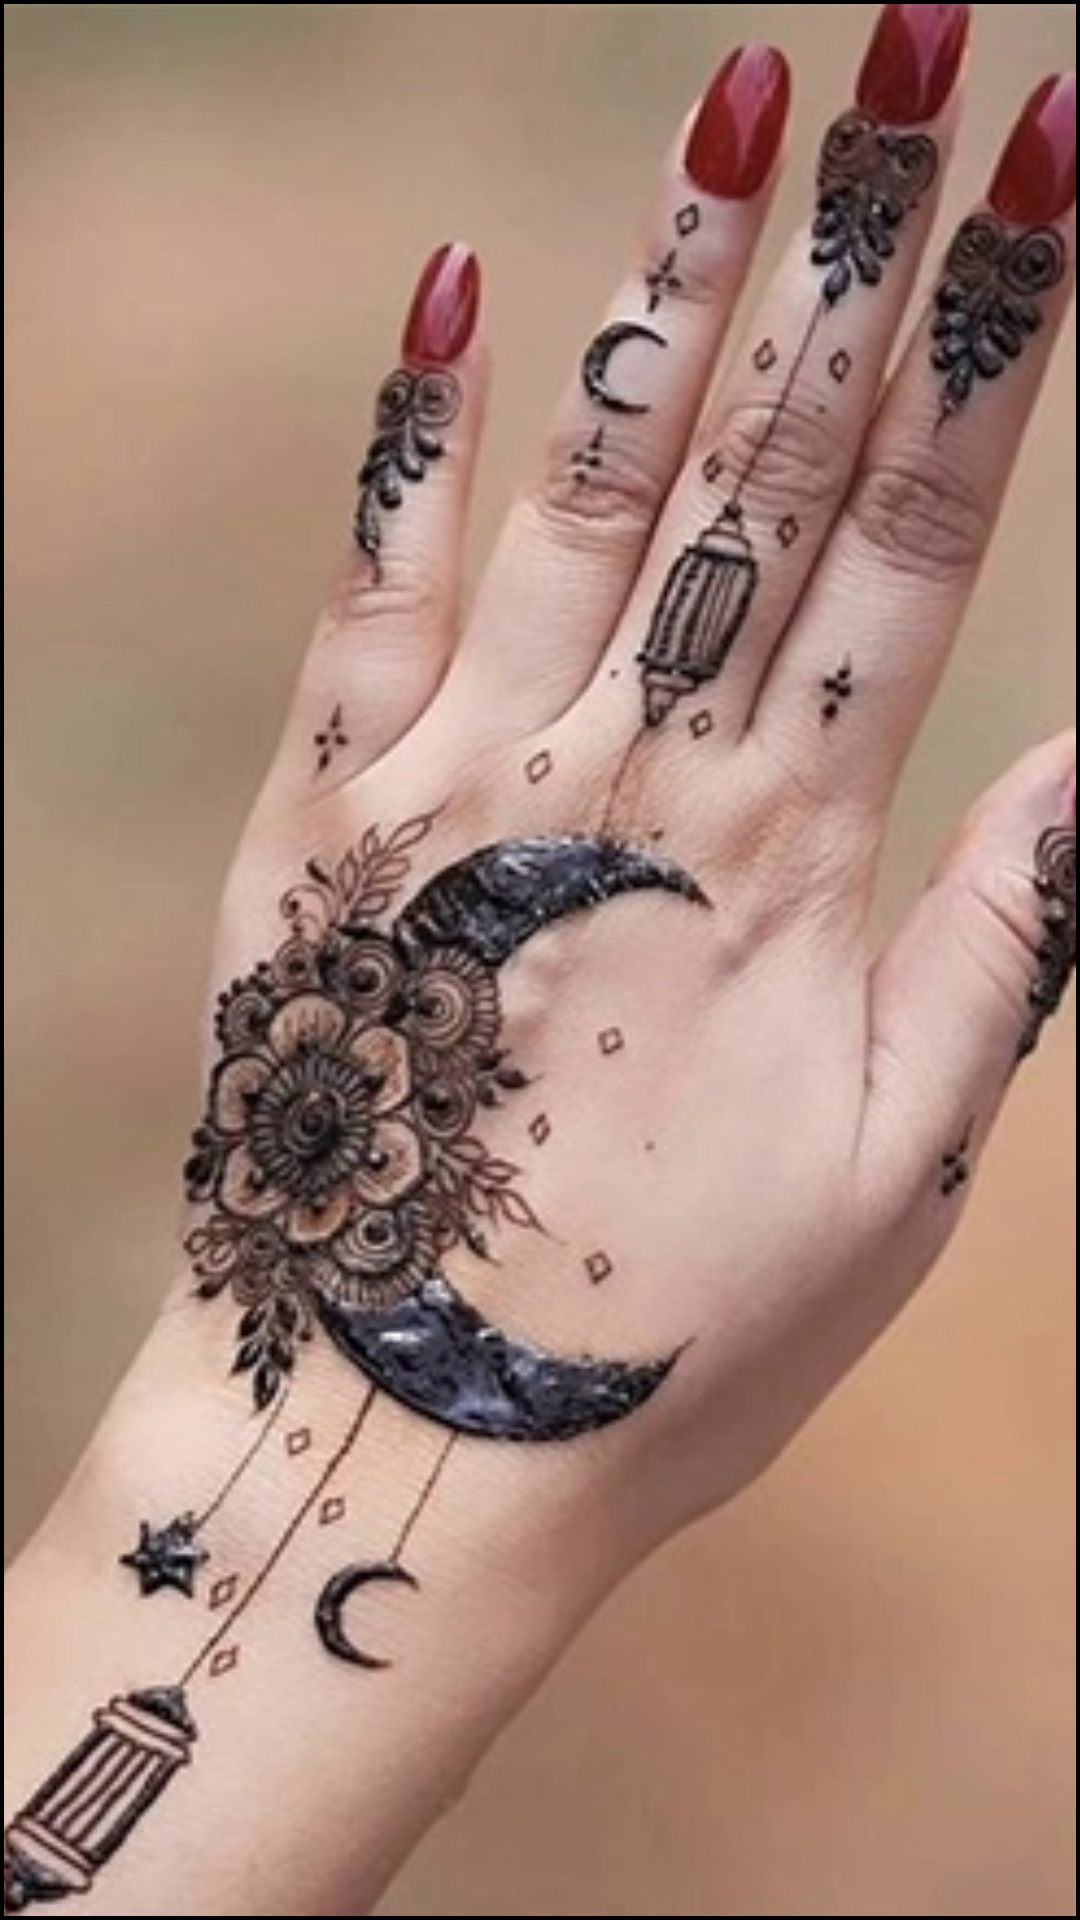 ईद पर लगाएं मेहंदी के ये डिजाइन, चांद से खूबसूरत लगेंगे हाथ 